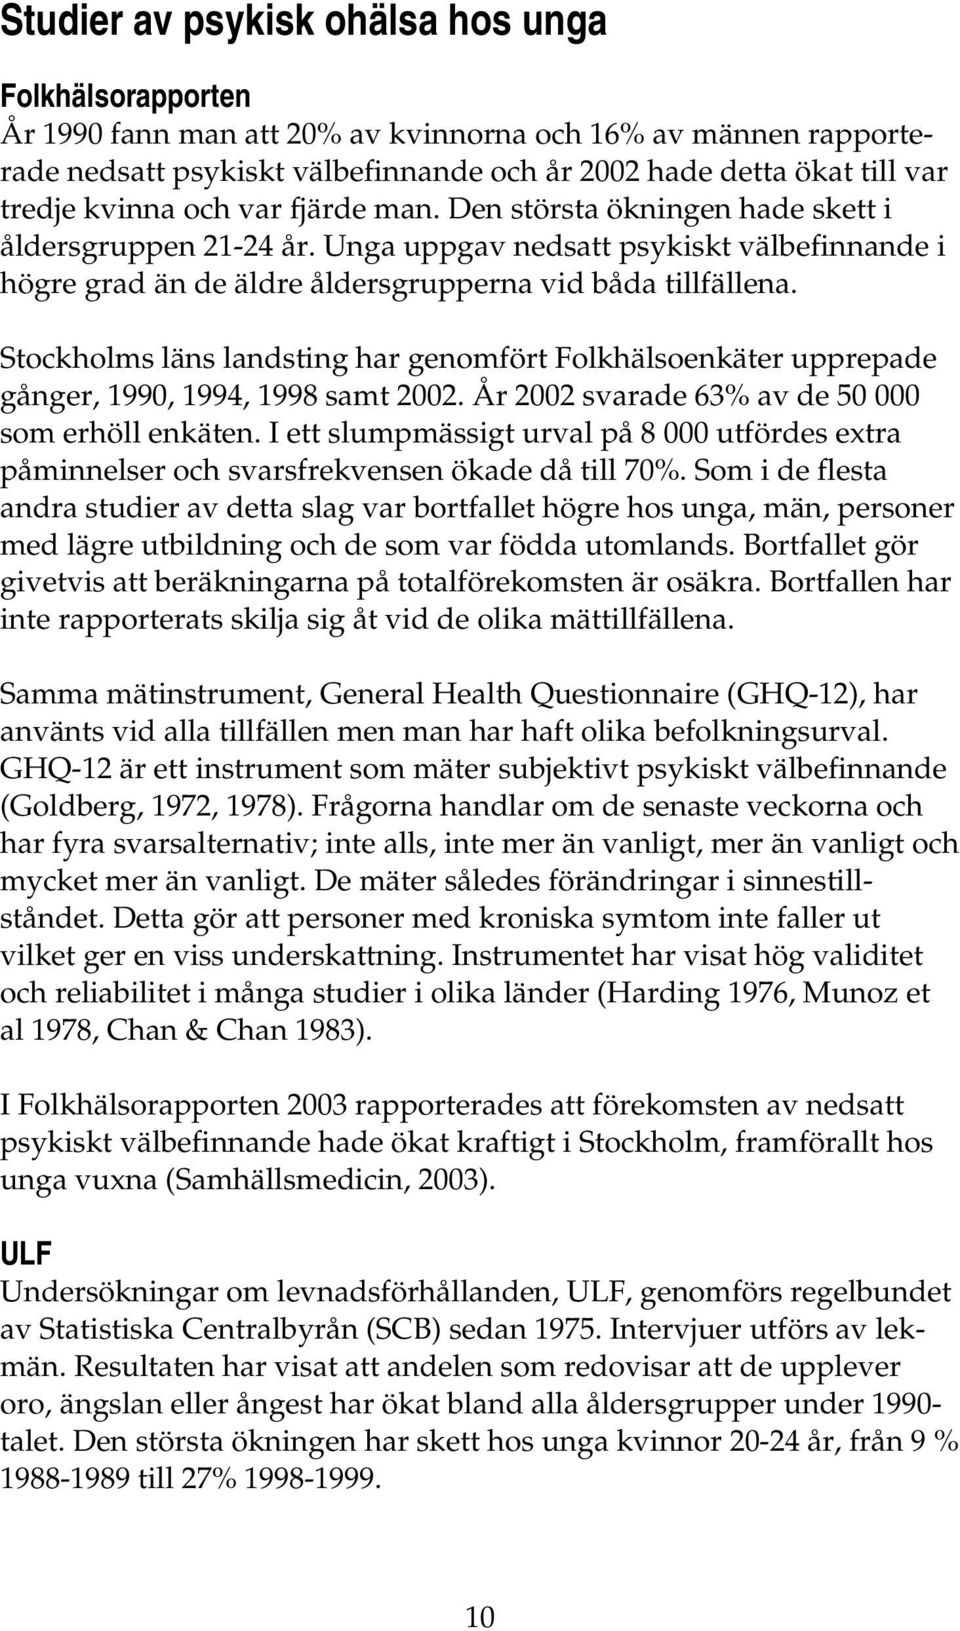 Stockholms läns landsting har genomfört Folkhälsoenkäter upprepade gånger, 1990, 1994, 1998 samt 2002. År 2002 svarade 63% av de 50 000 som erhöll enkäten.